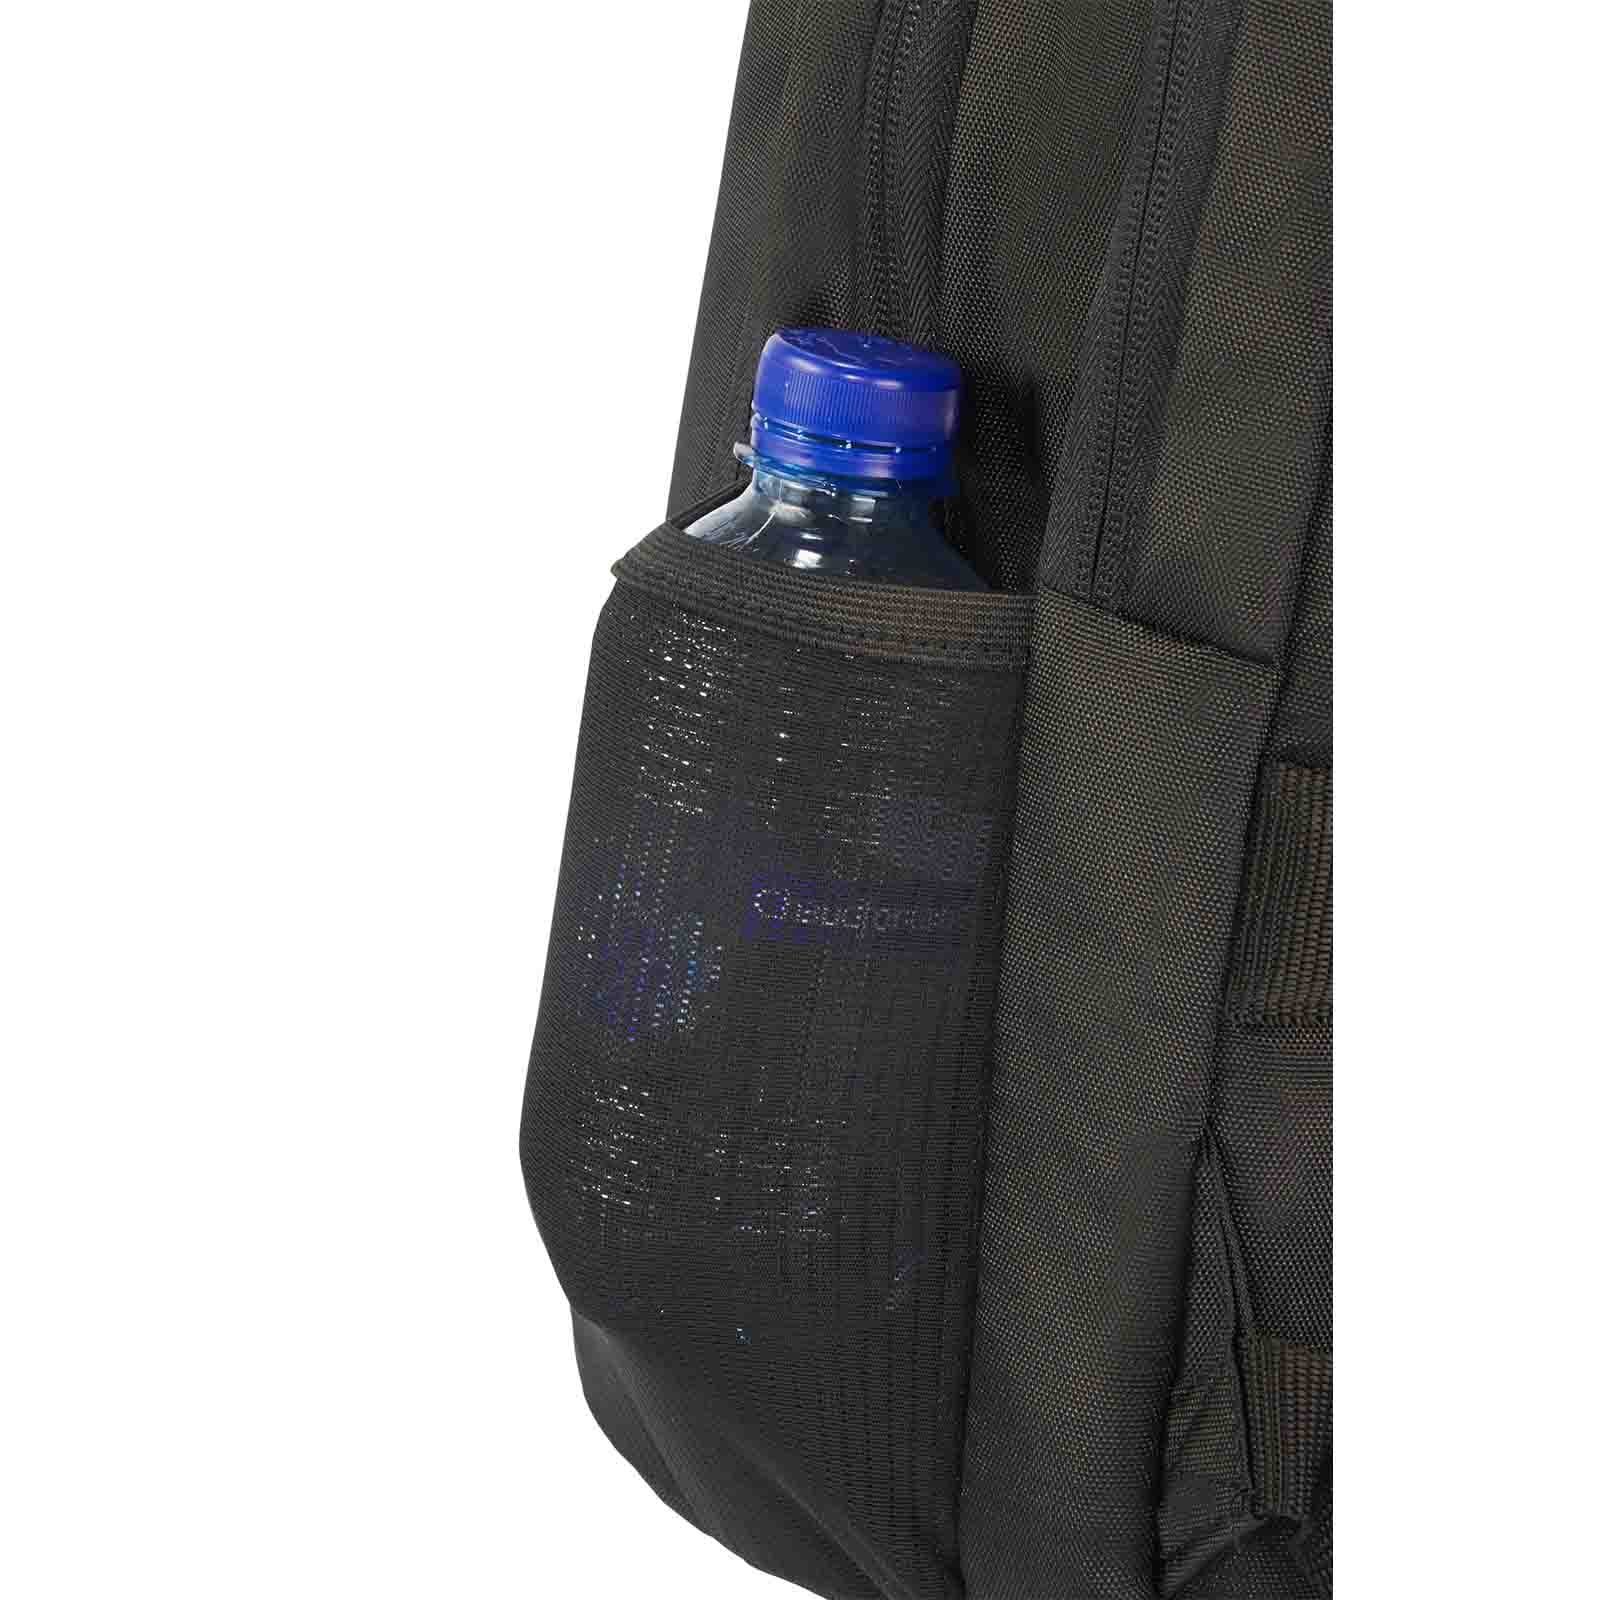 Samsonite-Guardit-2-17-Inch-Laptop-Backpack-Bottle-Holder